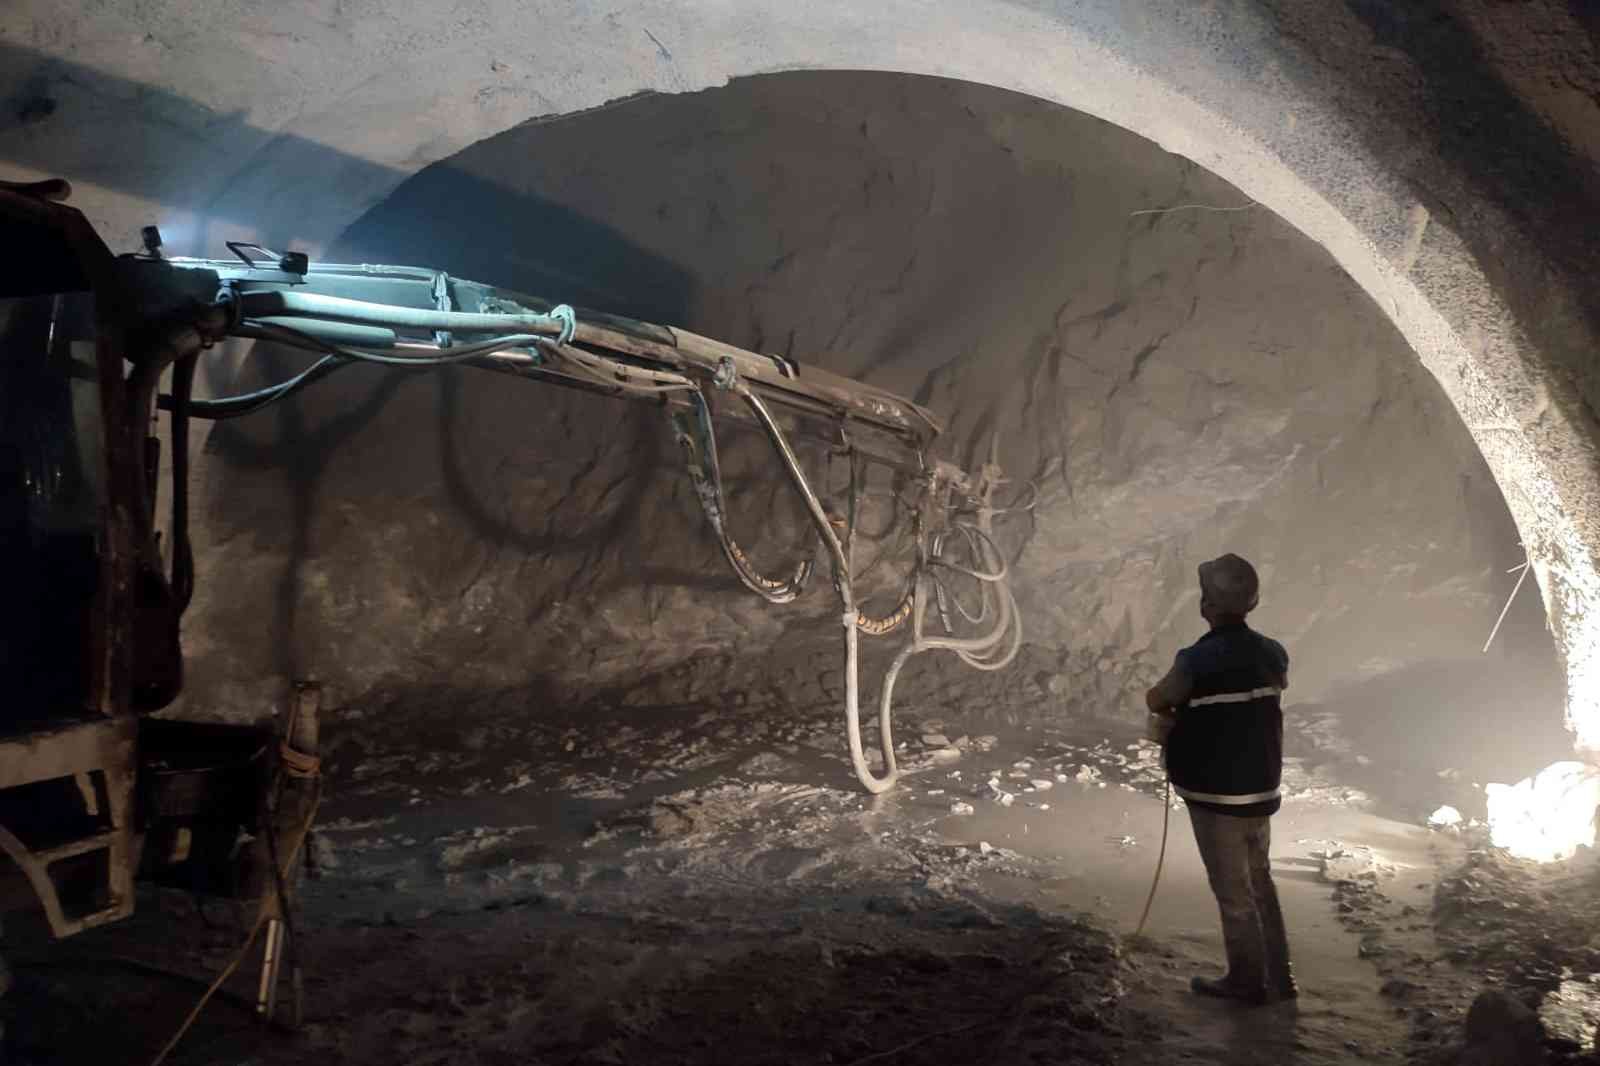 Yeni Zigana Tünelinde ışığa 90 metre kaldı #gumushane